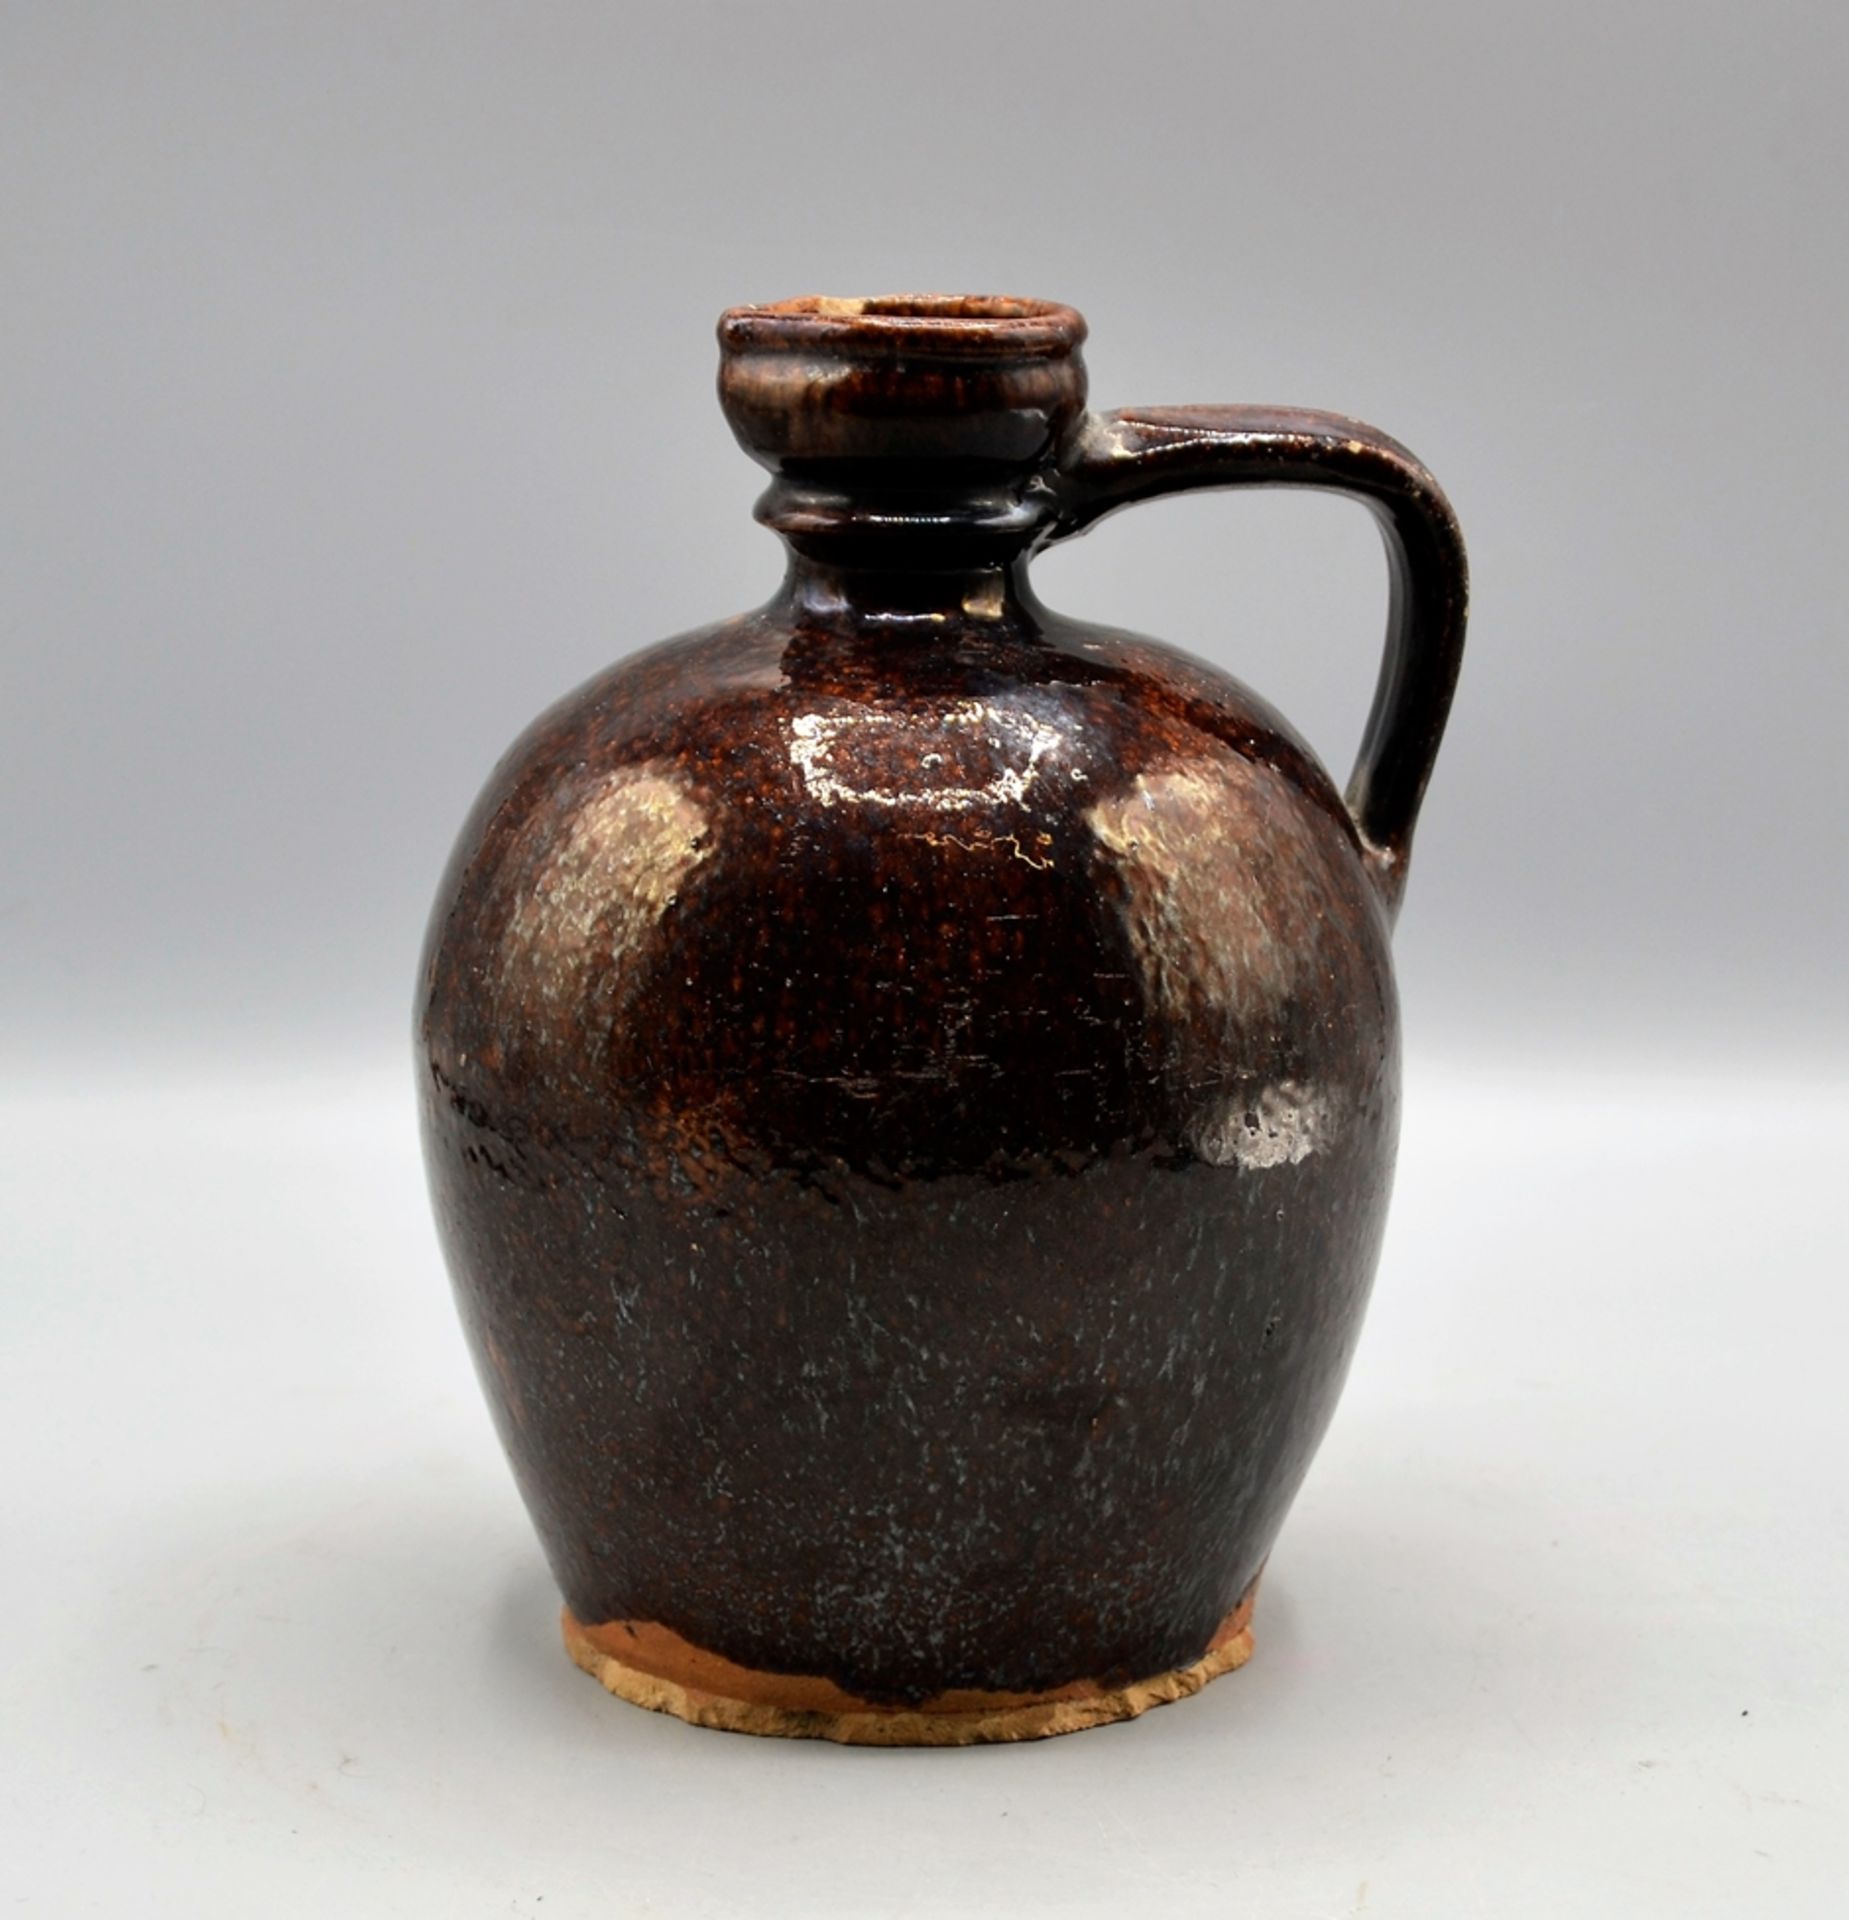 Bludser Hafnerware Keramik, braun glasiert, rötlicher Scherben, leicht bestoßen, ca. 20 cm